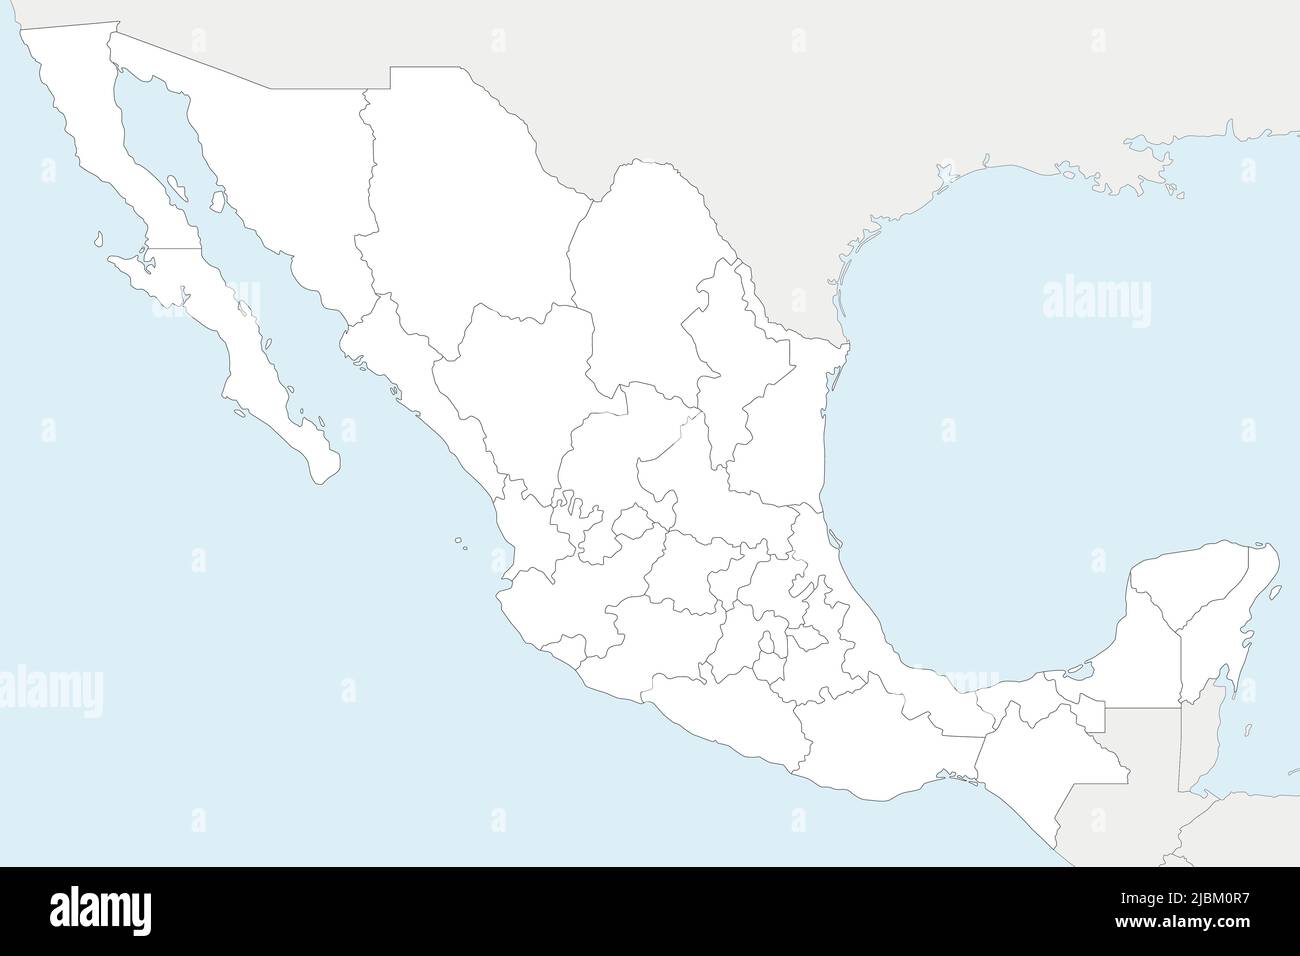 Mappa vettoriale vuota del Messico con regioni o stati e divisioni amministrative e paesi vicini. Livelli modificabili e chiaramente etichettati. Illustrazione Vettoriale